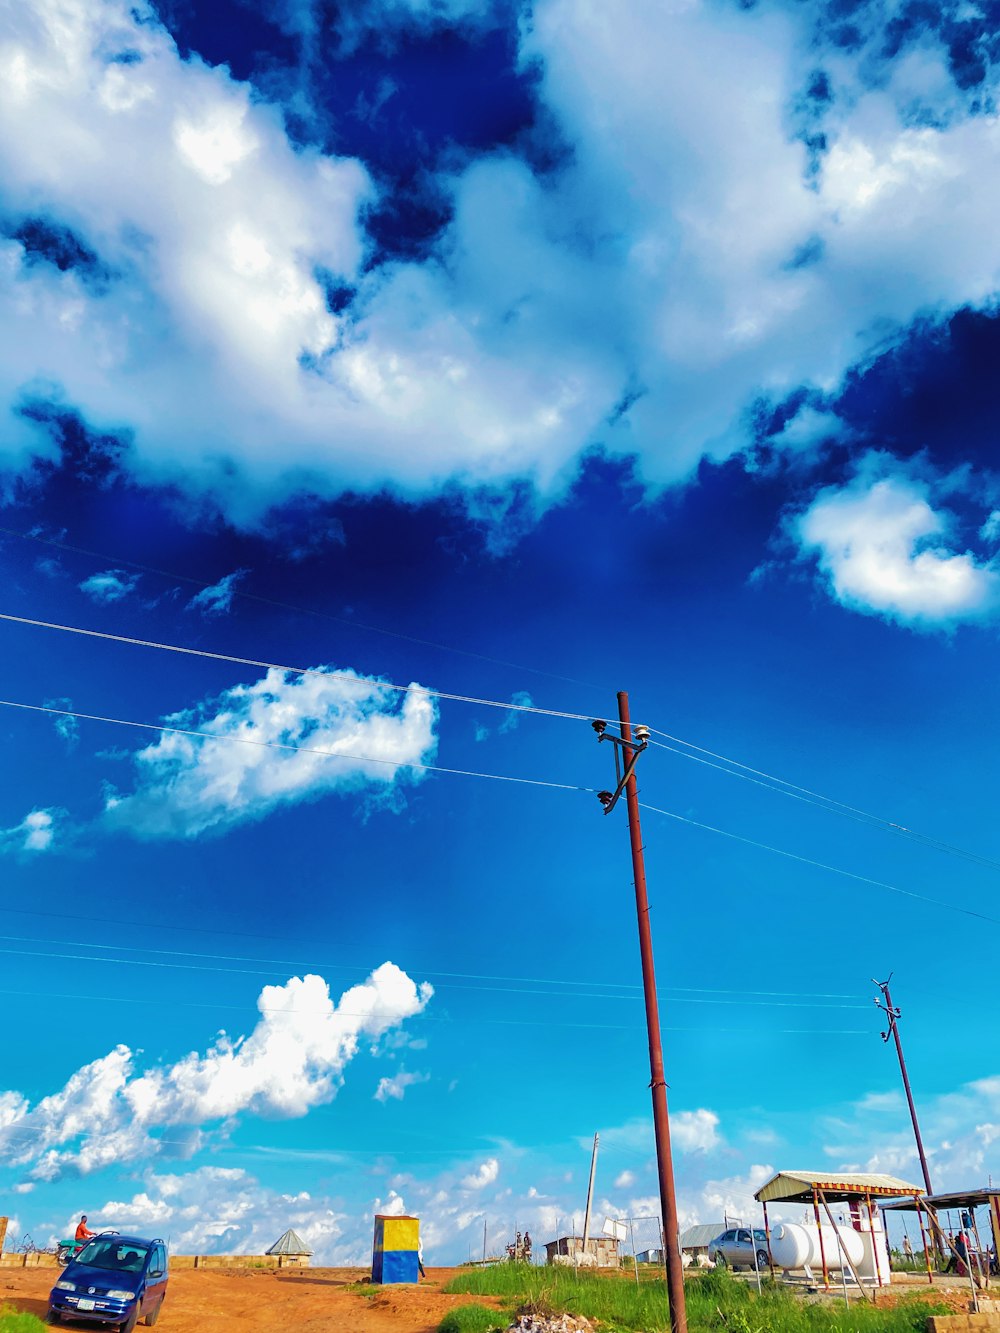 Un automóvil conduciendo por un camino de tierra bajo un cielo azul nublado